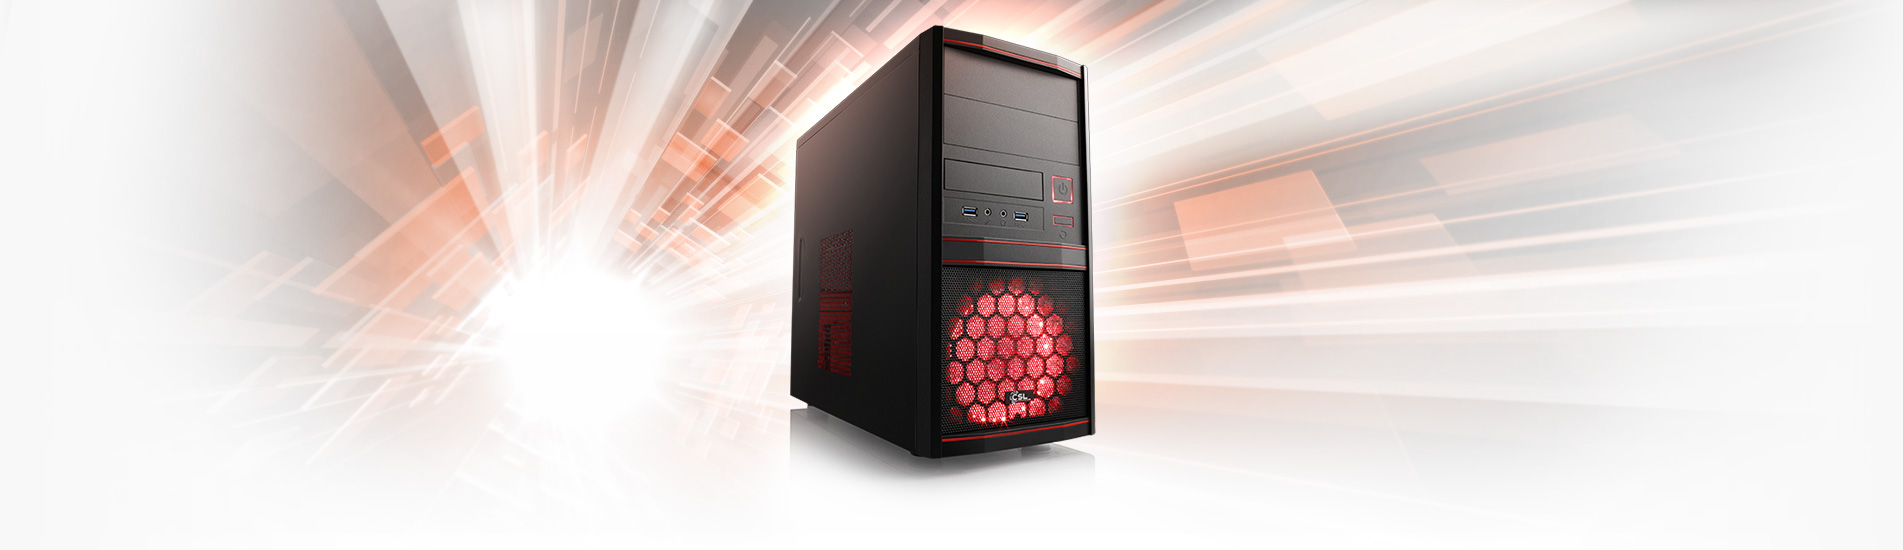 Ein leistungsstarker Allround-PC mit Ryzen™ 5 PRO 4650G Prozessor für Office, Multimedia und Entry-Gaming.